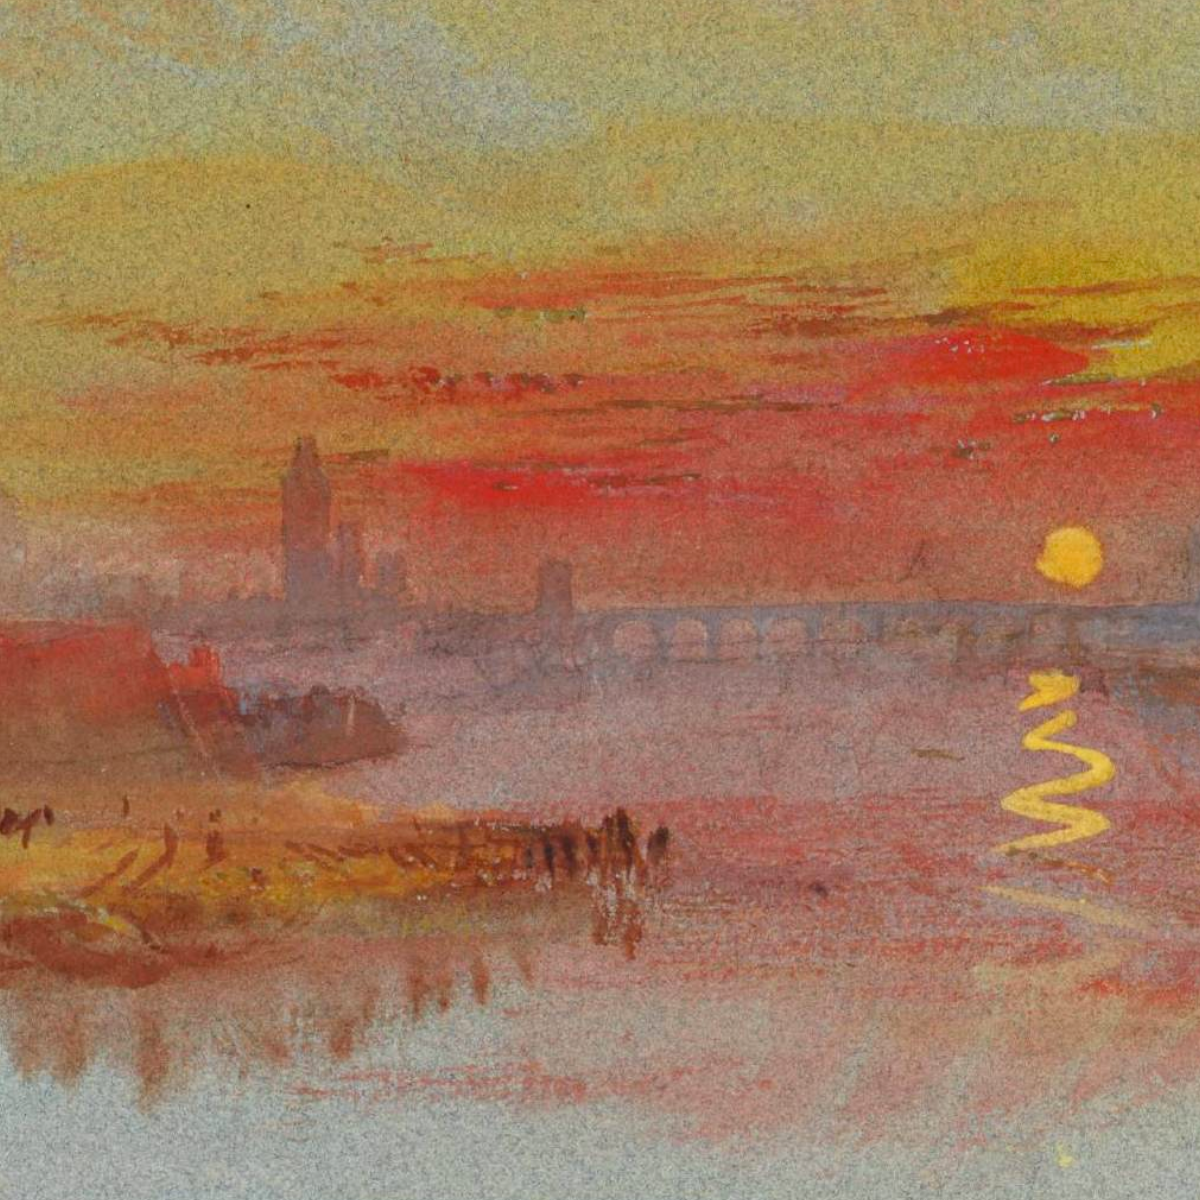 Turner's Sunsets Art Inspiration Workshop For Children